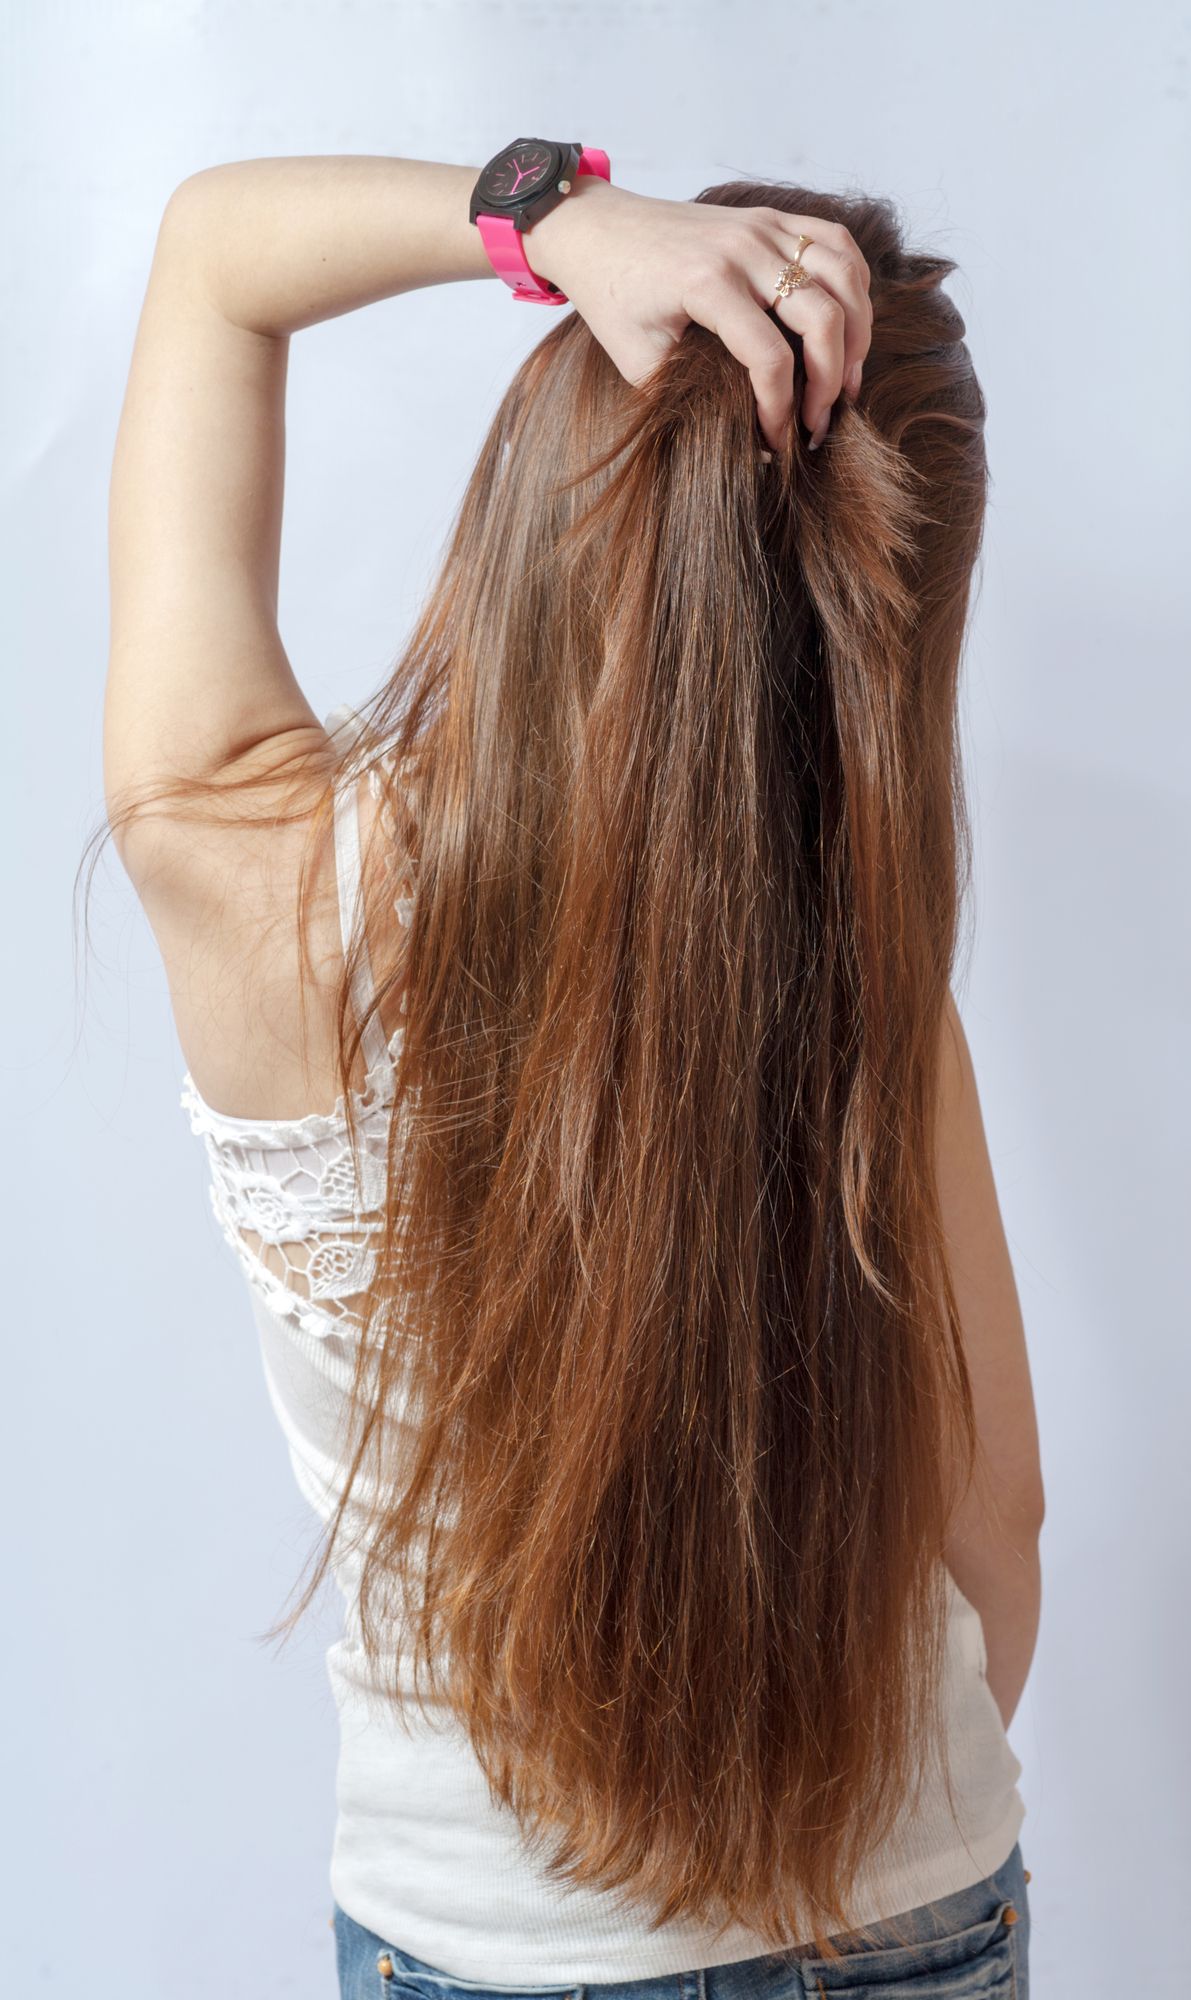 ⁨‎⁨الشعر الطويل من معايير جمال المرأة⁩⁩